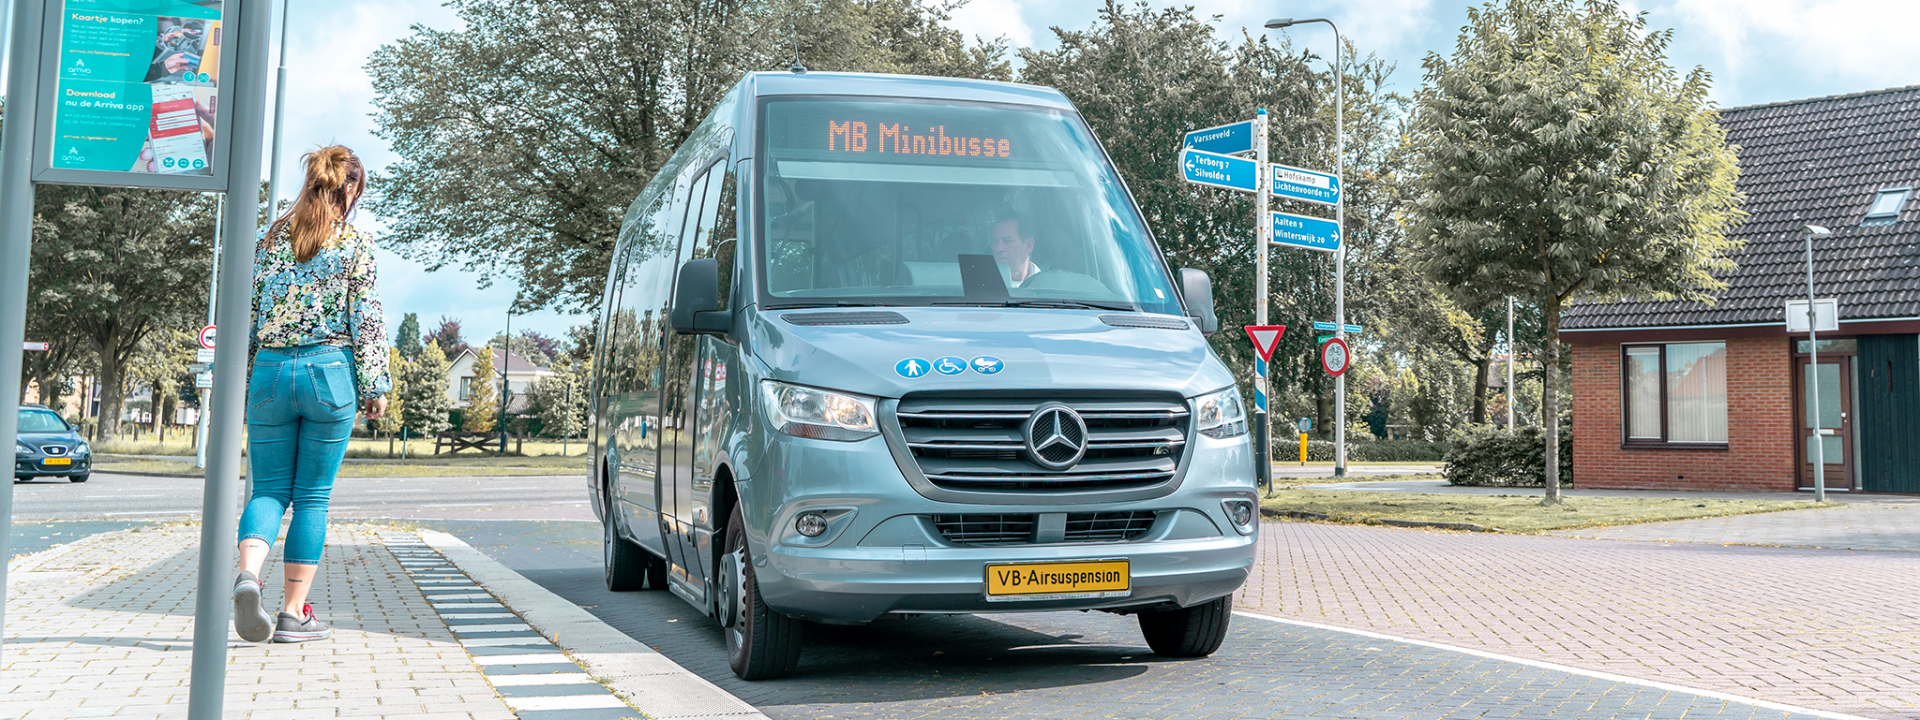 Foto: Mercedes-Benz Sprinter Minibus alla fermata dell'autobus